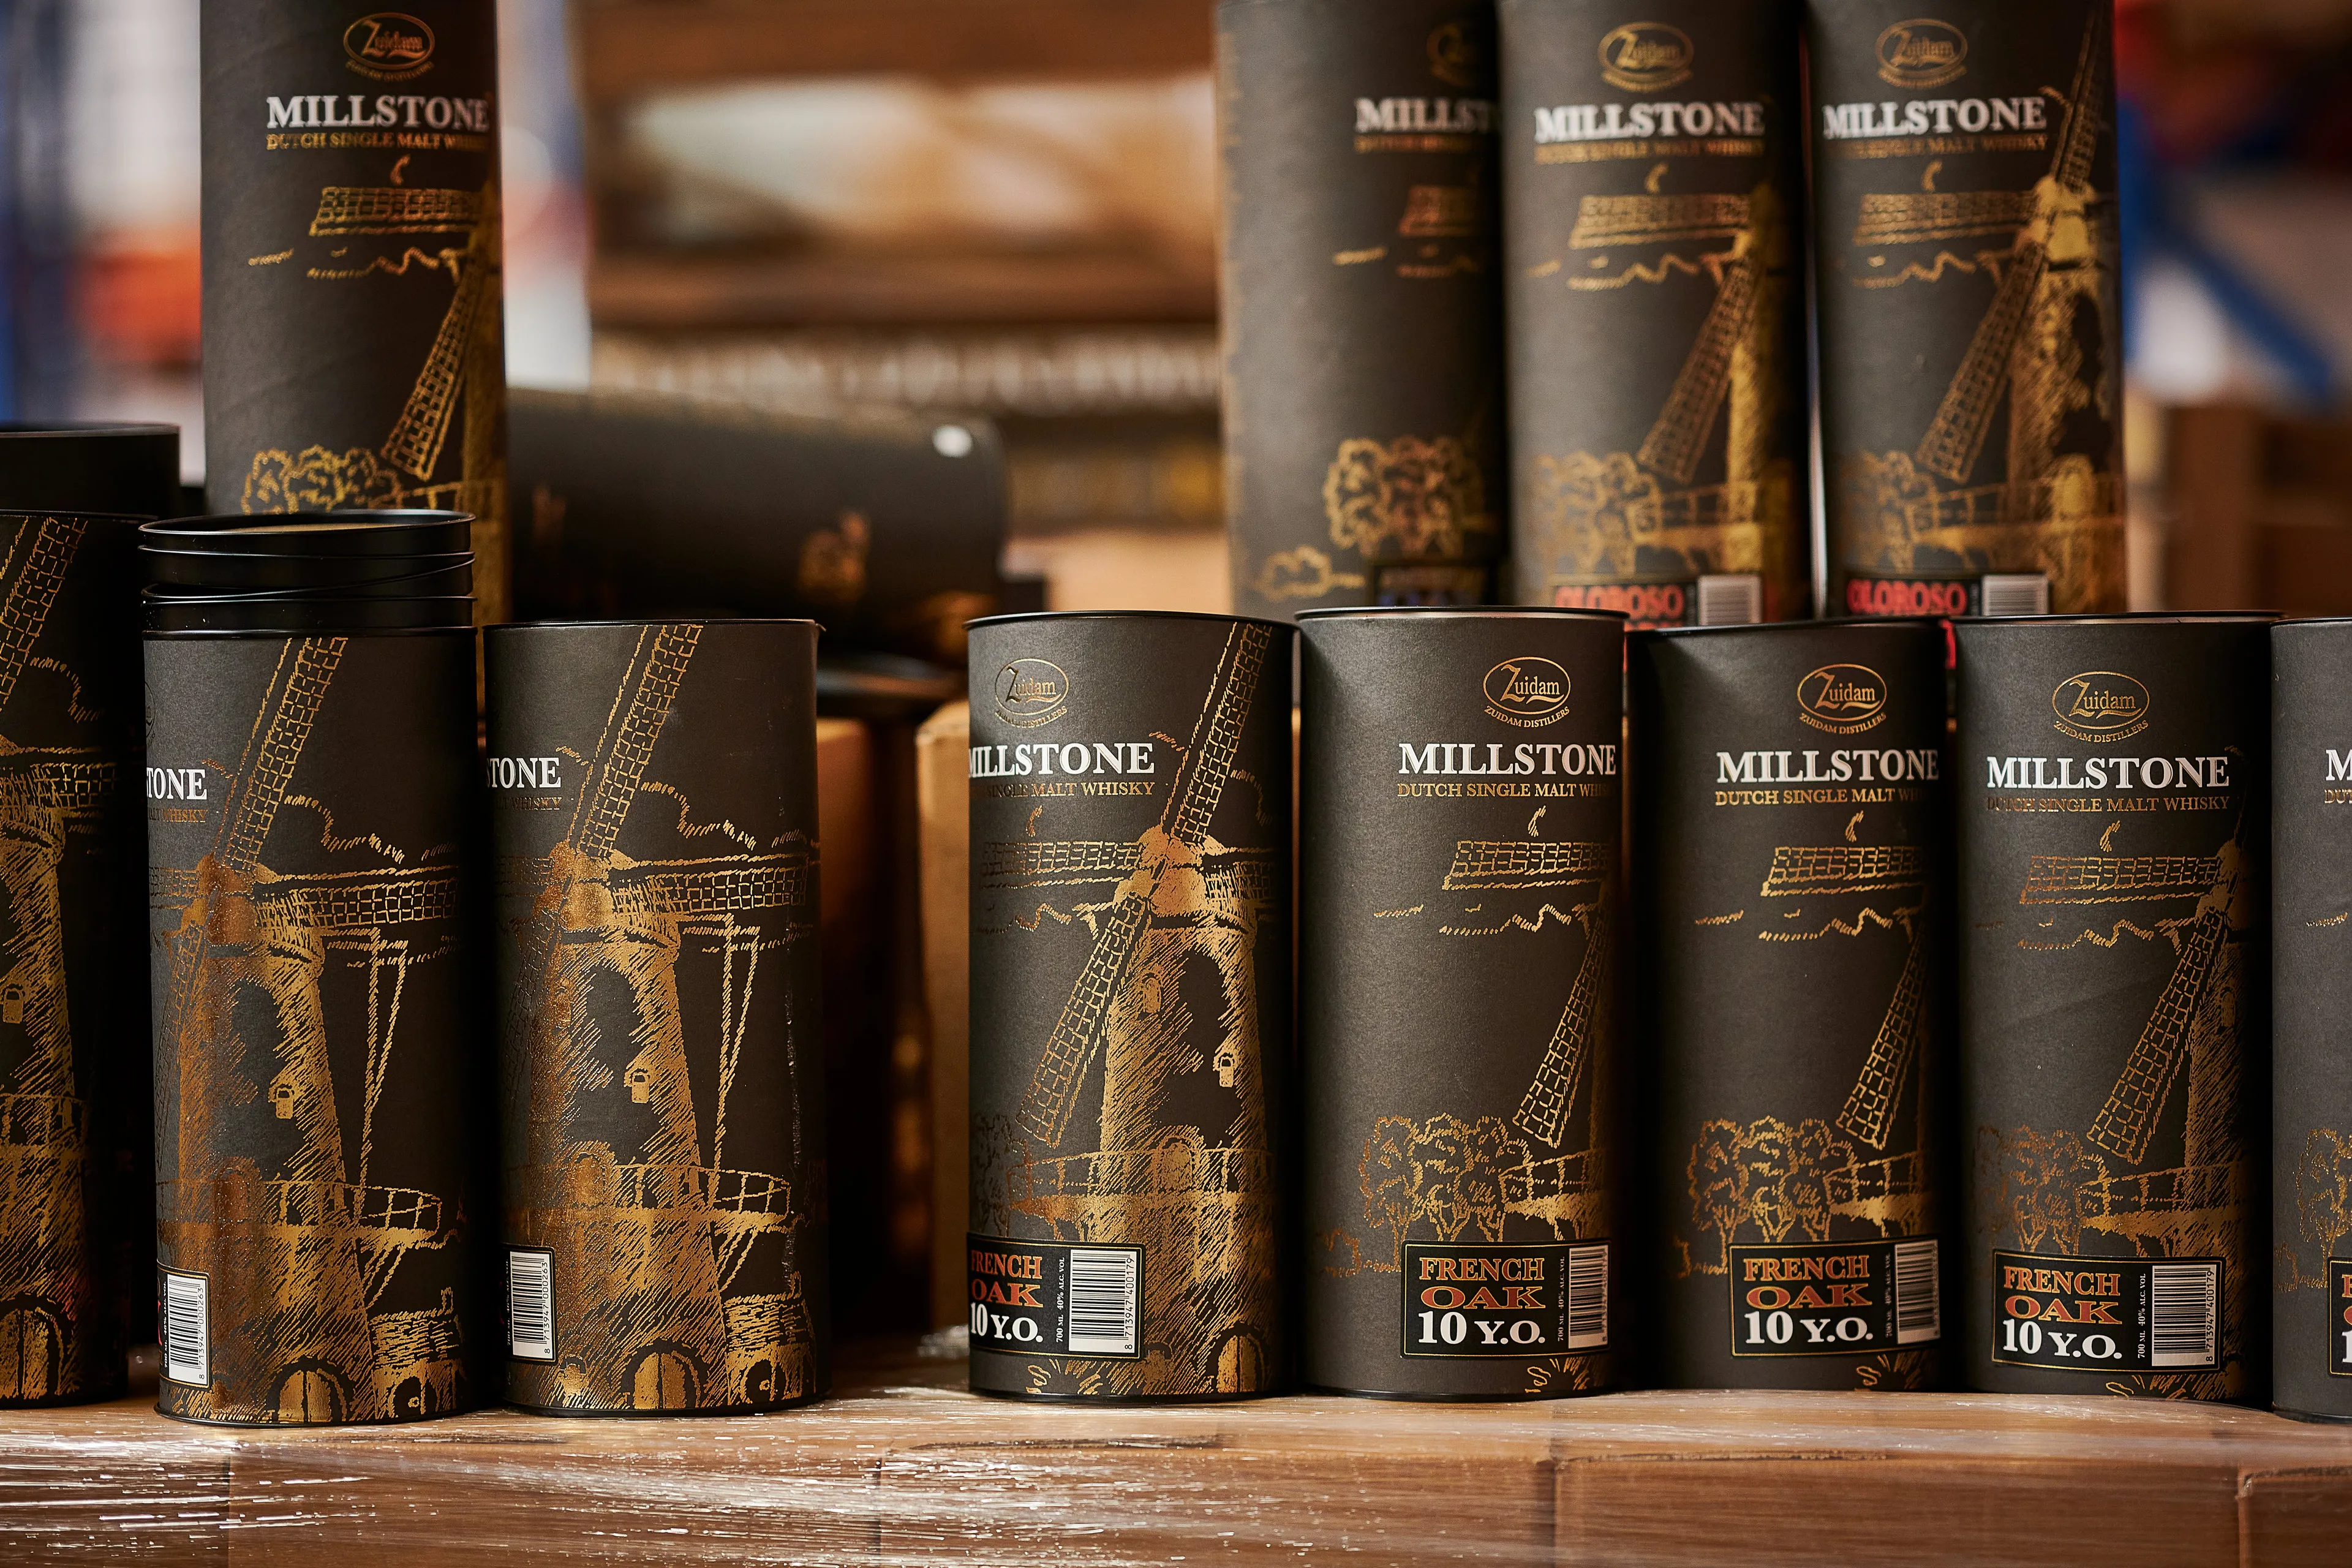 De Millstone French Oak 10 Year Old Dutch Single Malt whisky